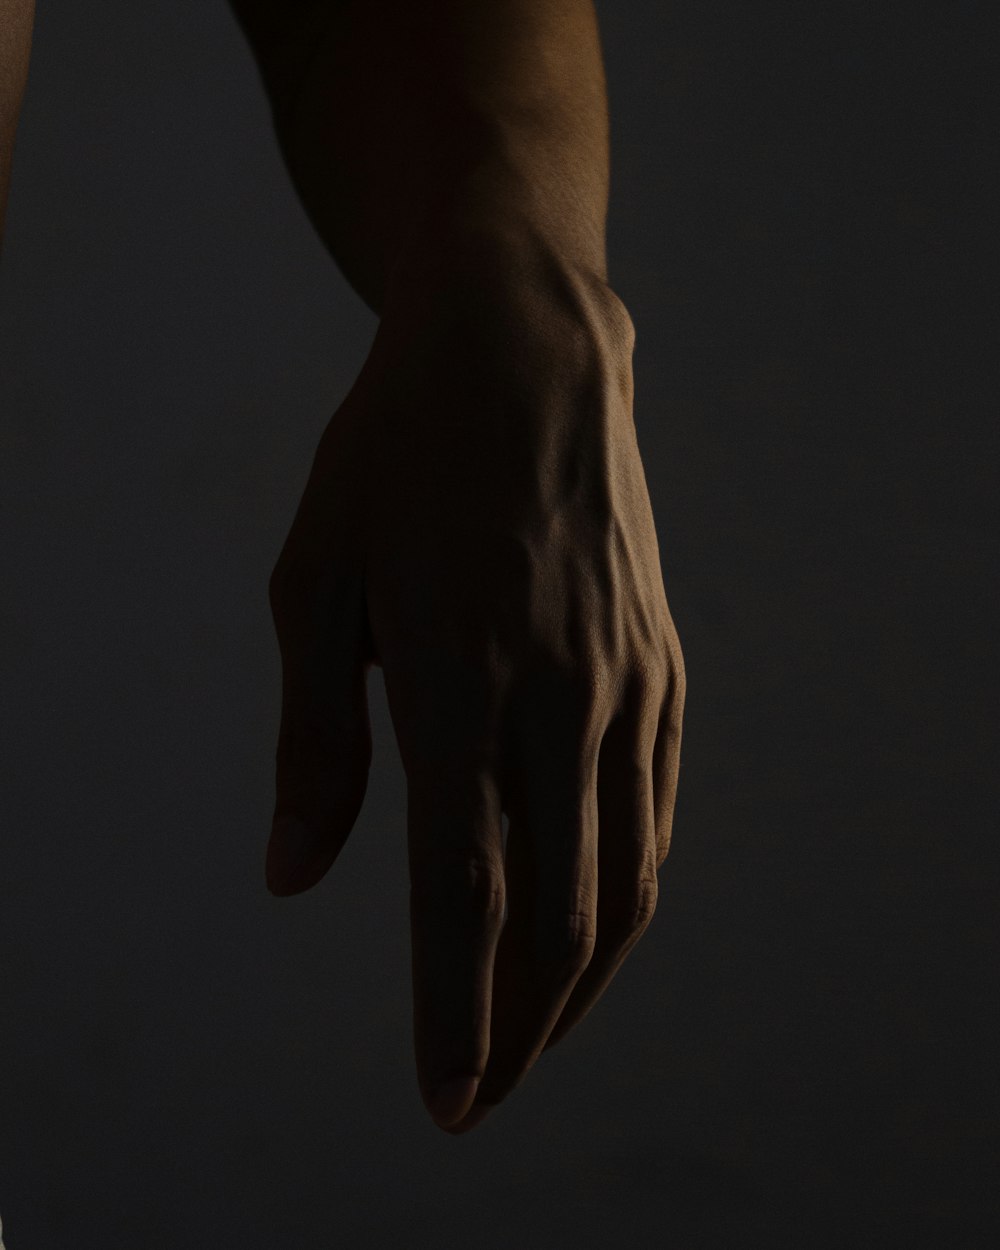 Personen Hand auf schwarzem Hintergrund